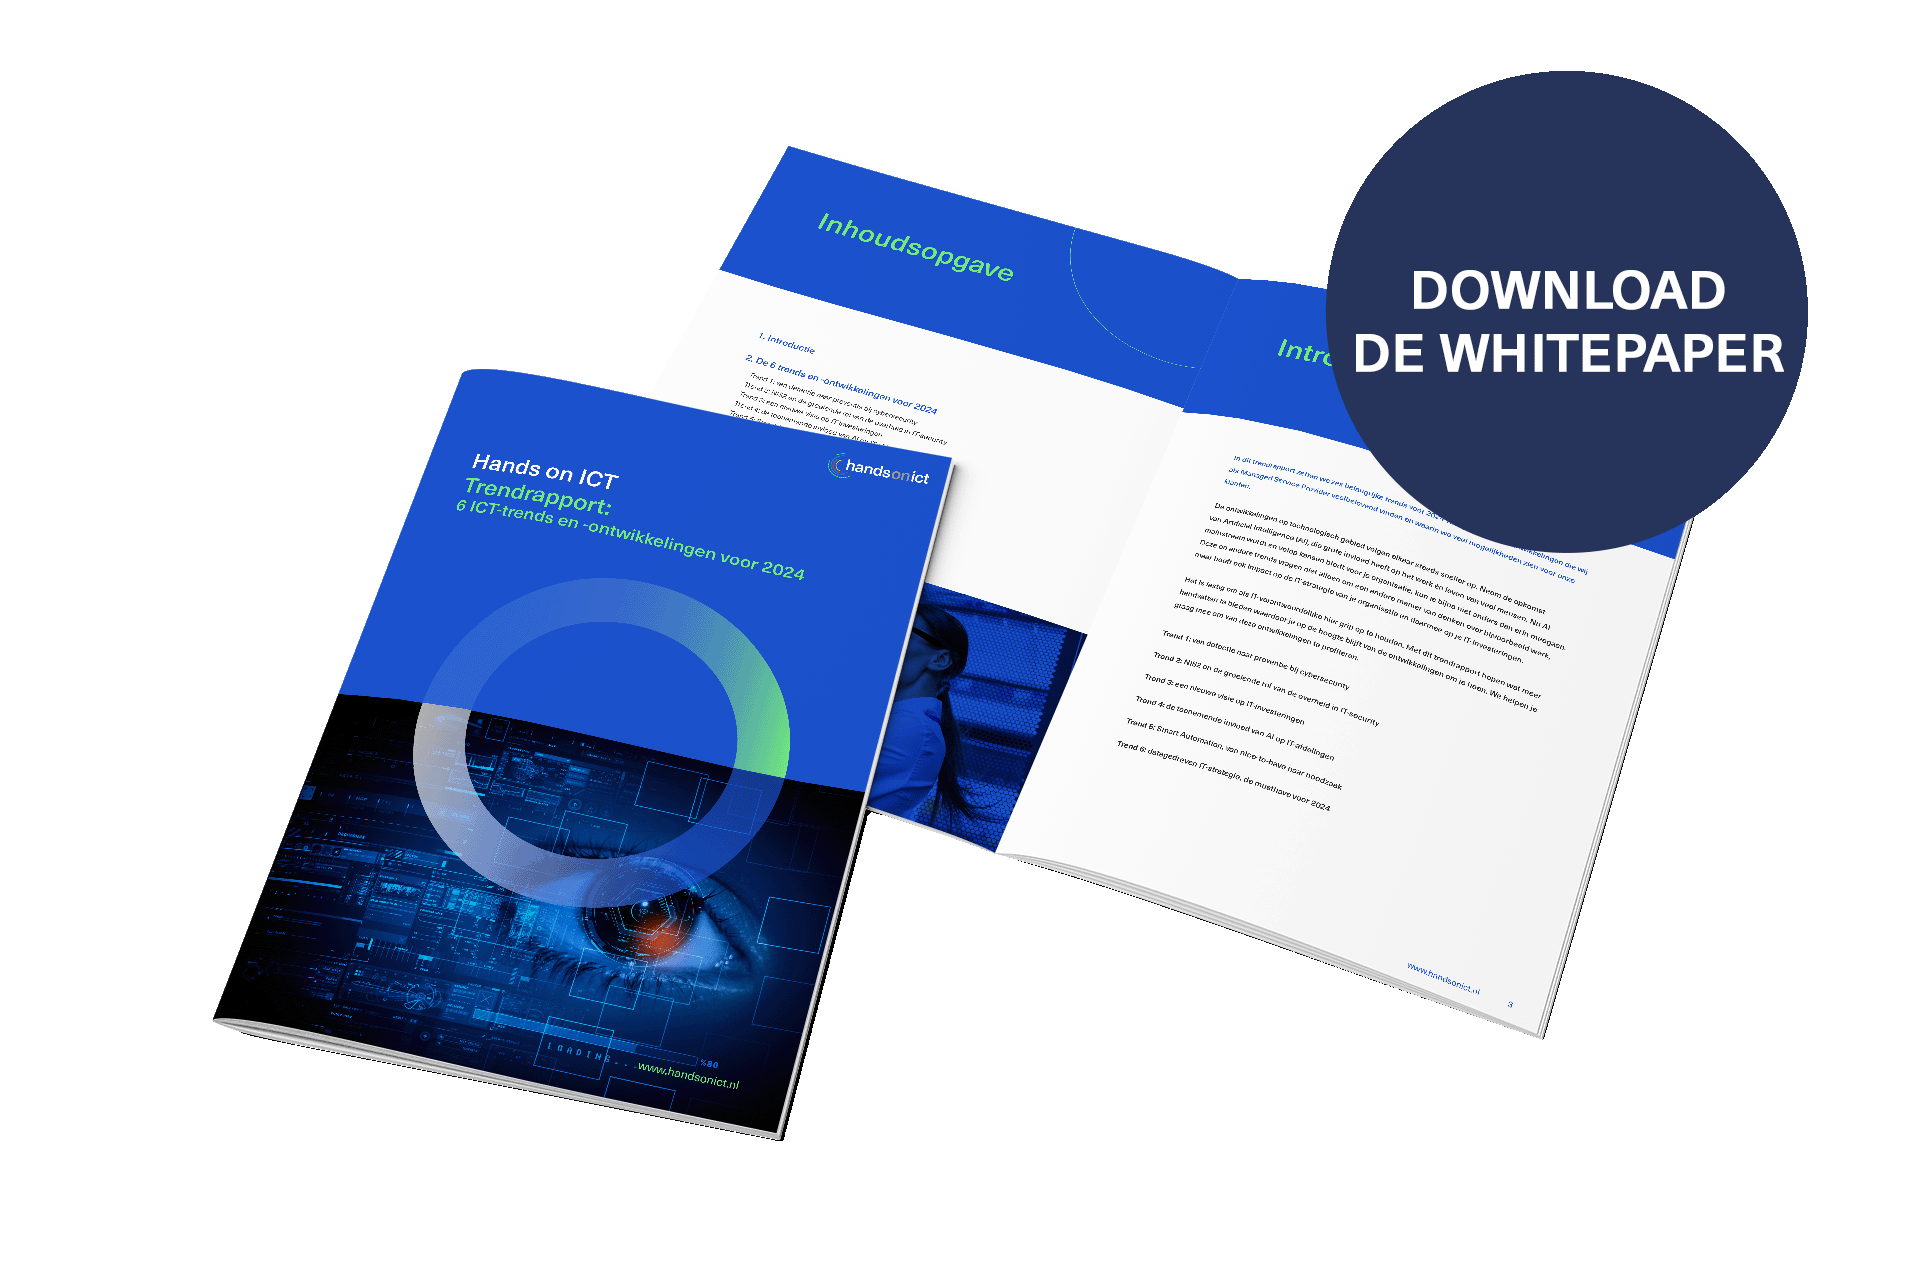 Trends & Ontwikkelingen - download de whitepaper